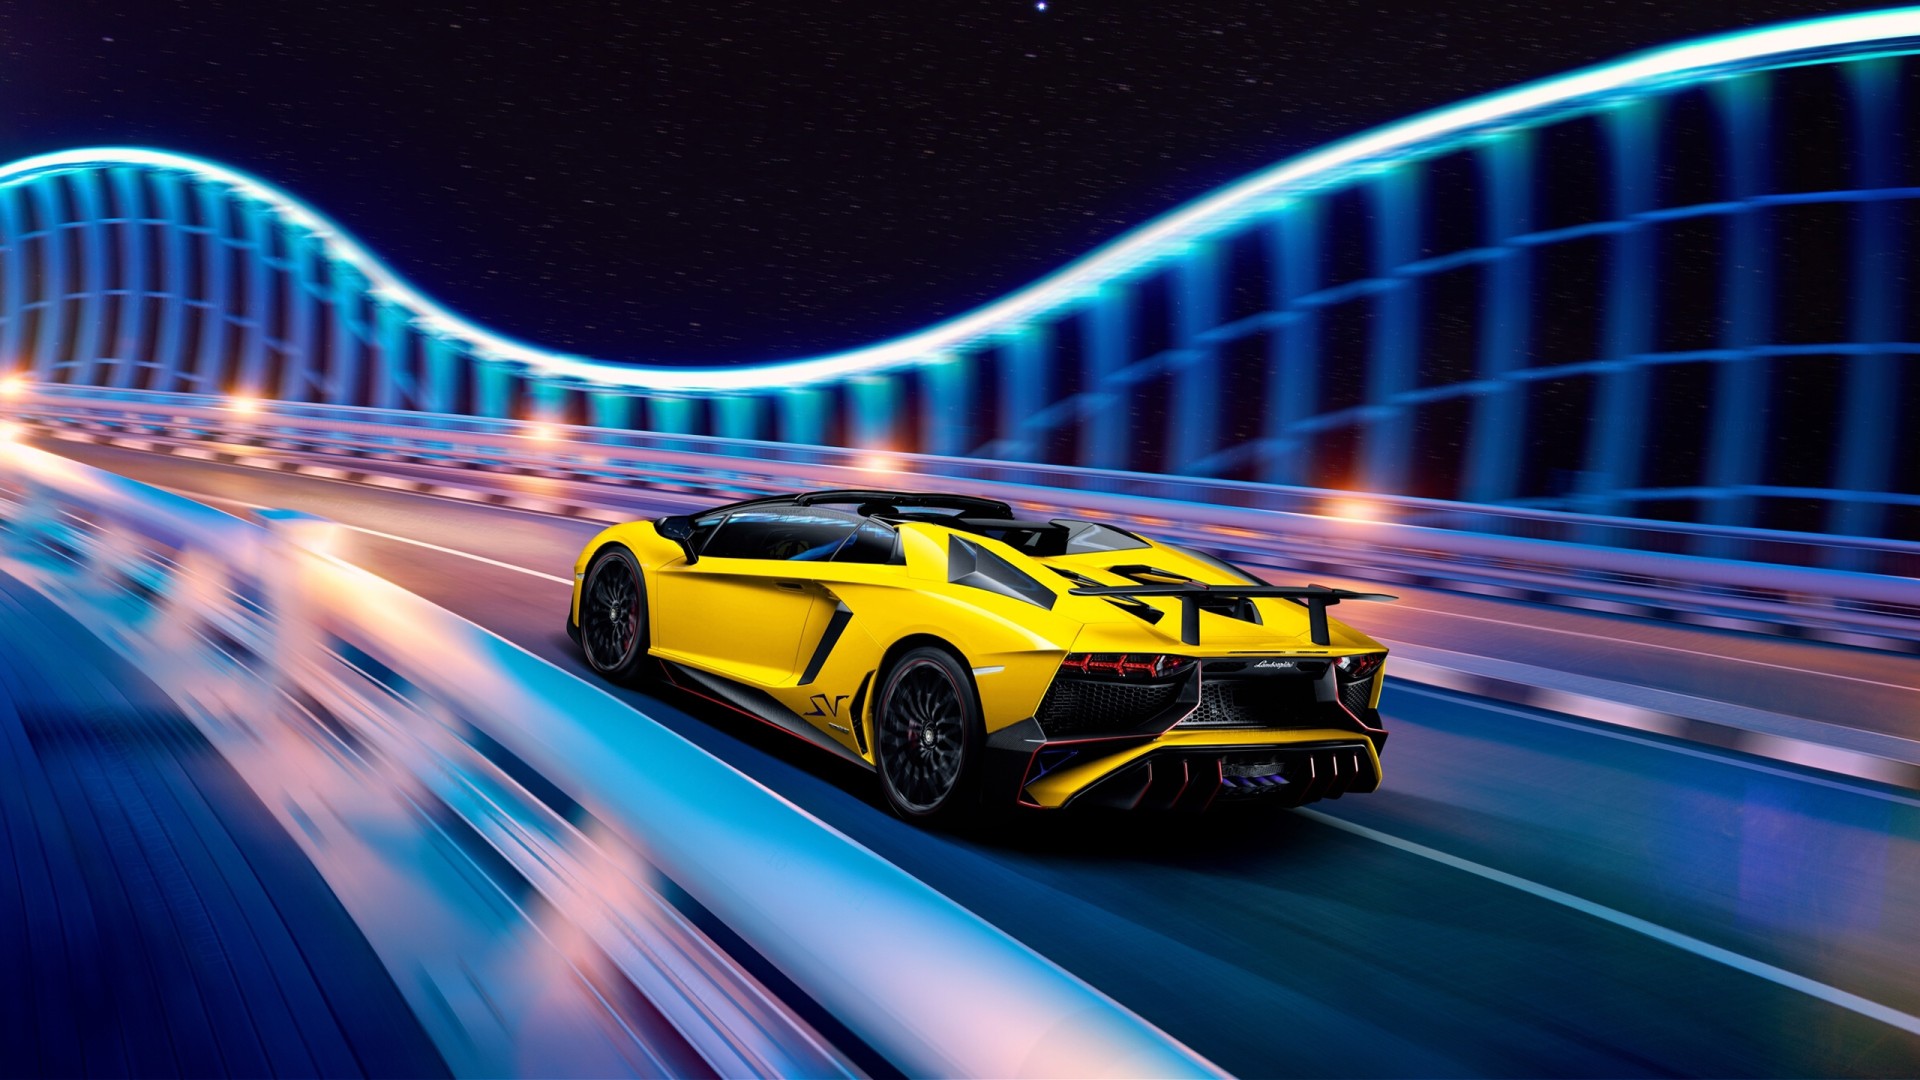 Những chiếc xe thể thao là sự kết hợp hoàn hảo giữa thiết kế và công nghệ. Hãy cùng chiêm ngưỡng Lamborghini Aventador, chiếc siêu xe với thiết kế ngoại hình đậm chất thể thao và động cơ mạnh mẽ, chắc chắn sẽ mang lại cho bạn những trải nghiệm thật tuyệt vời khi cầm lái.